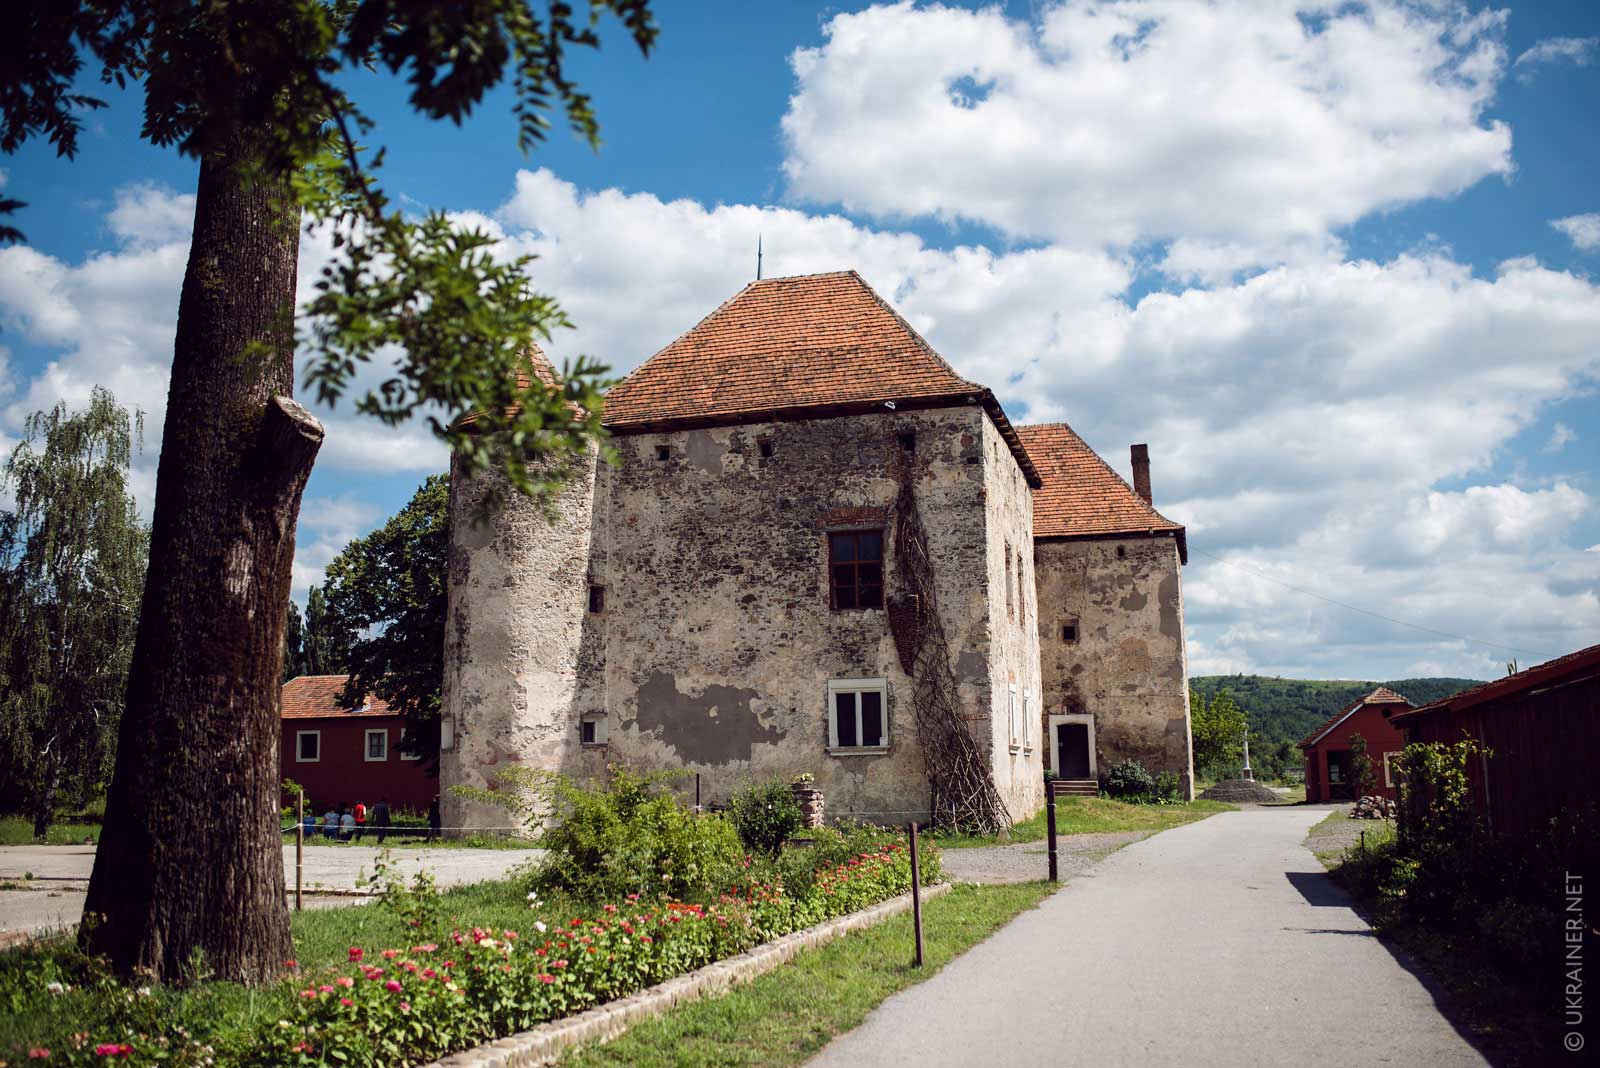 The Saint Miklós castle